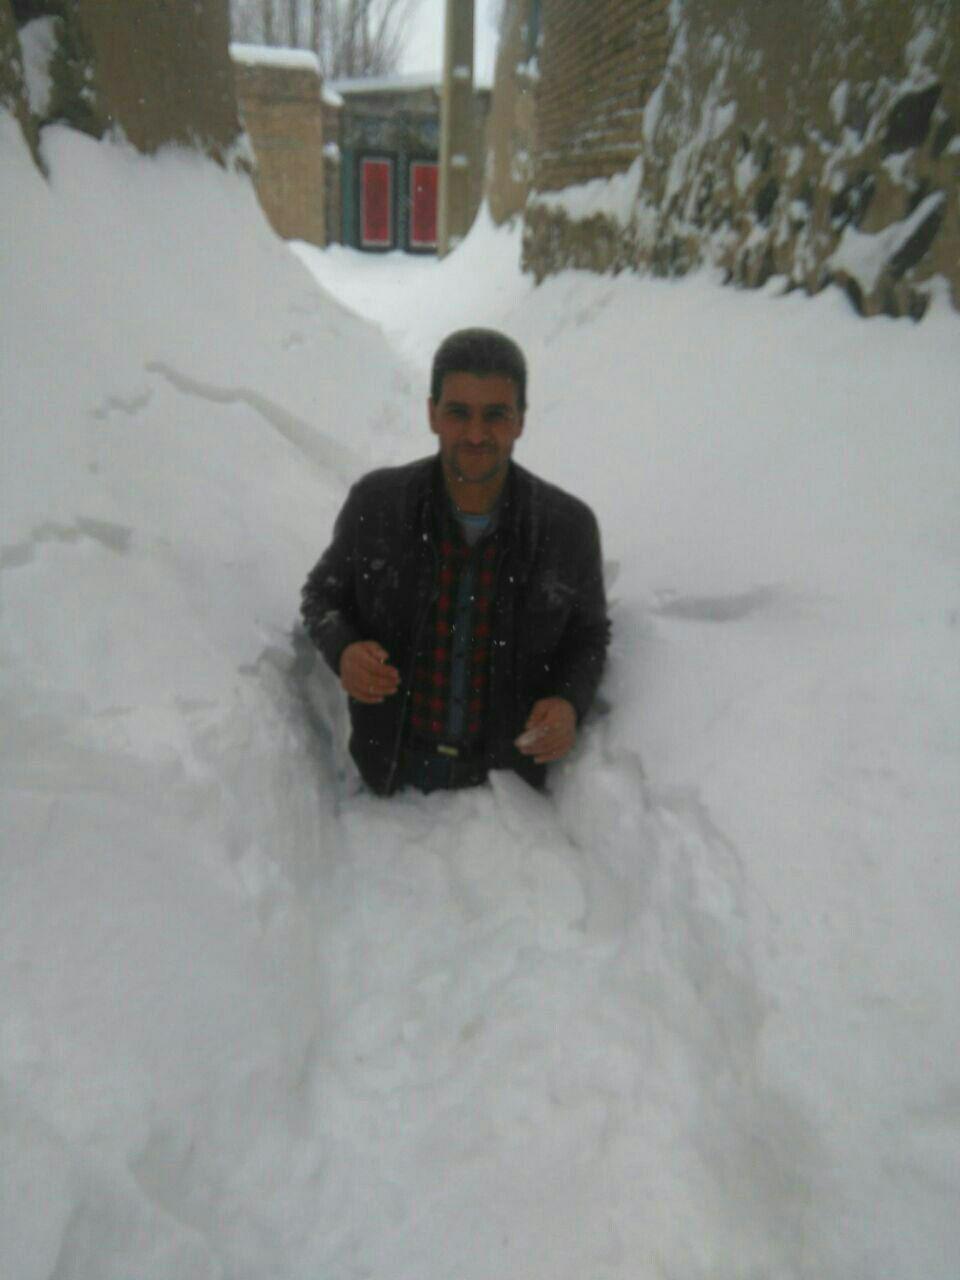 میزان بارش برف در روستای الخلج ازتوابع بستان آباد